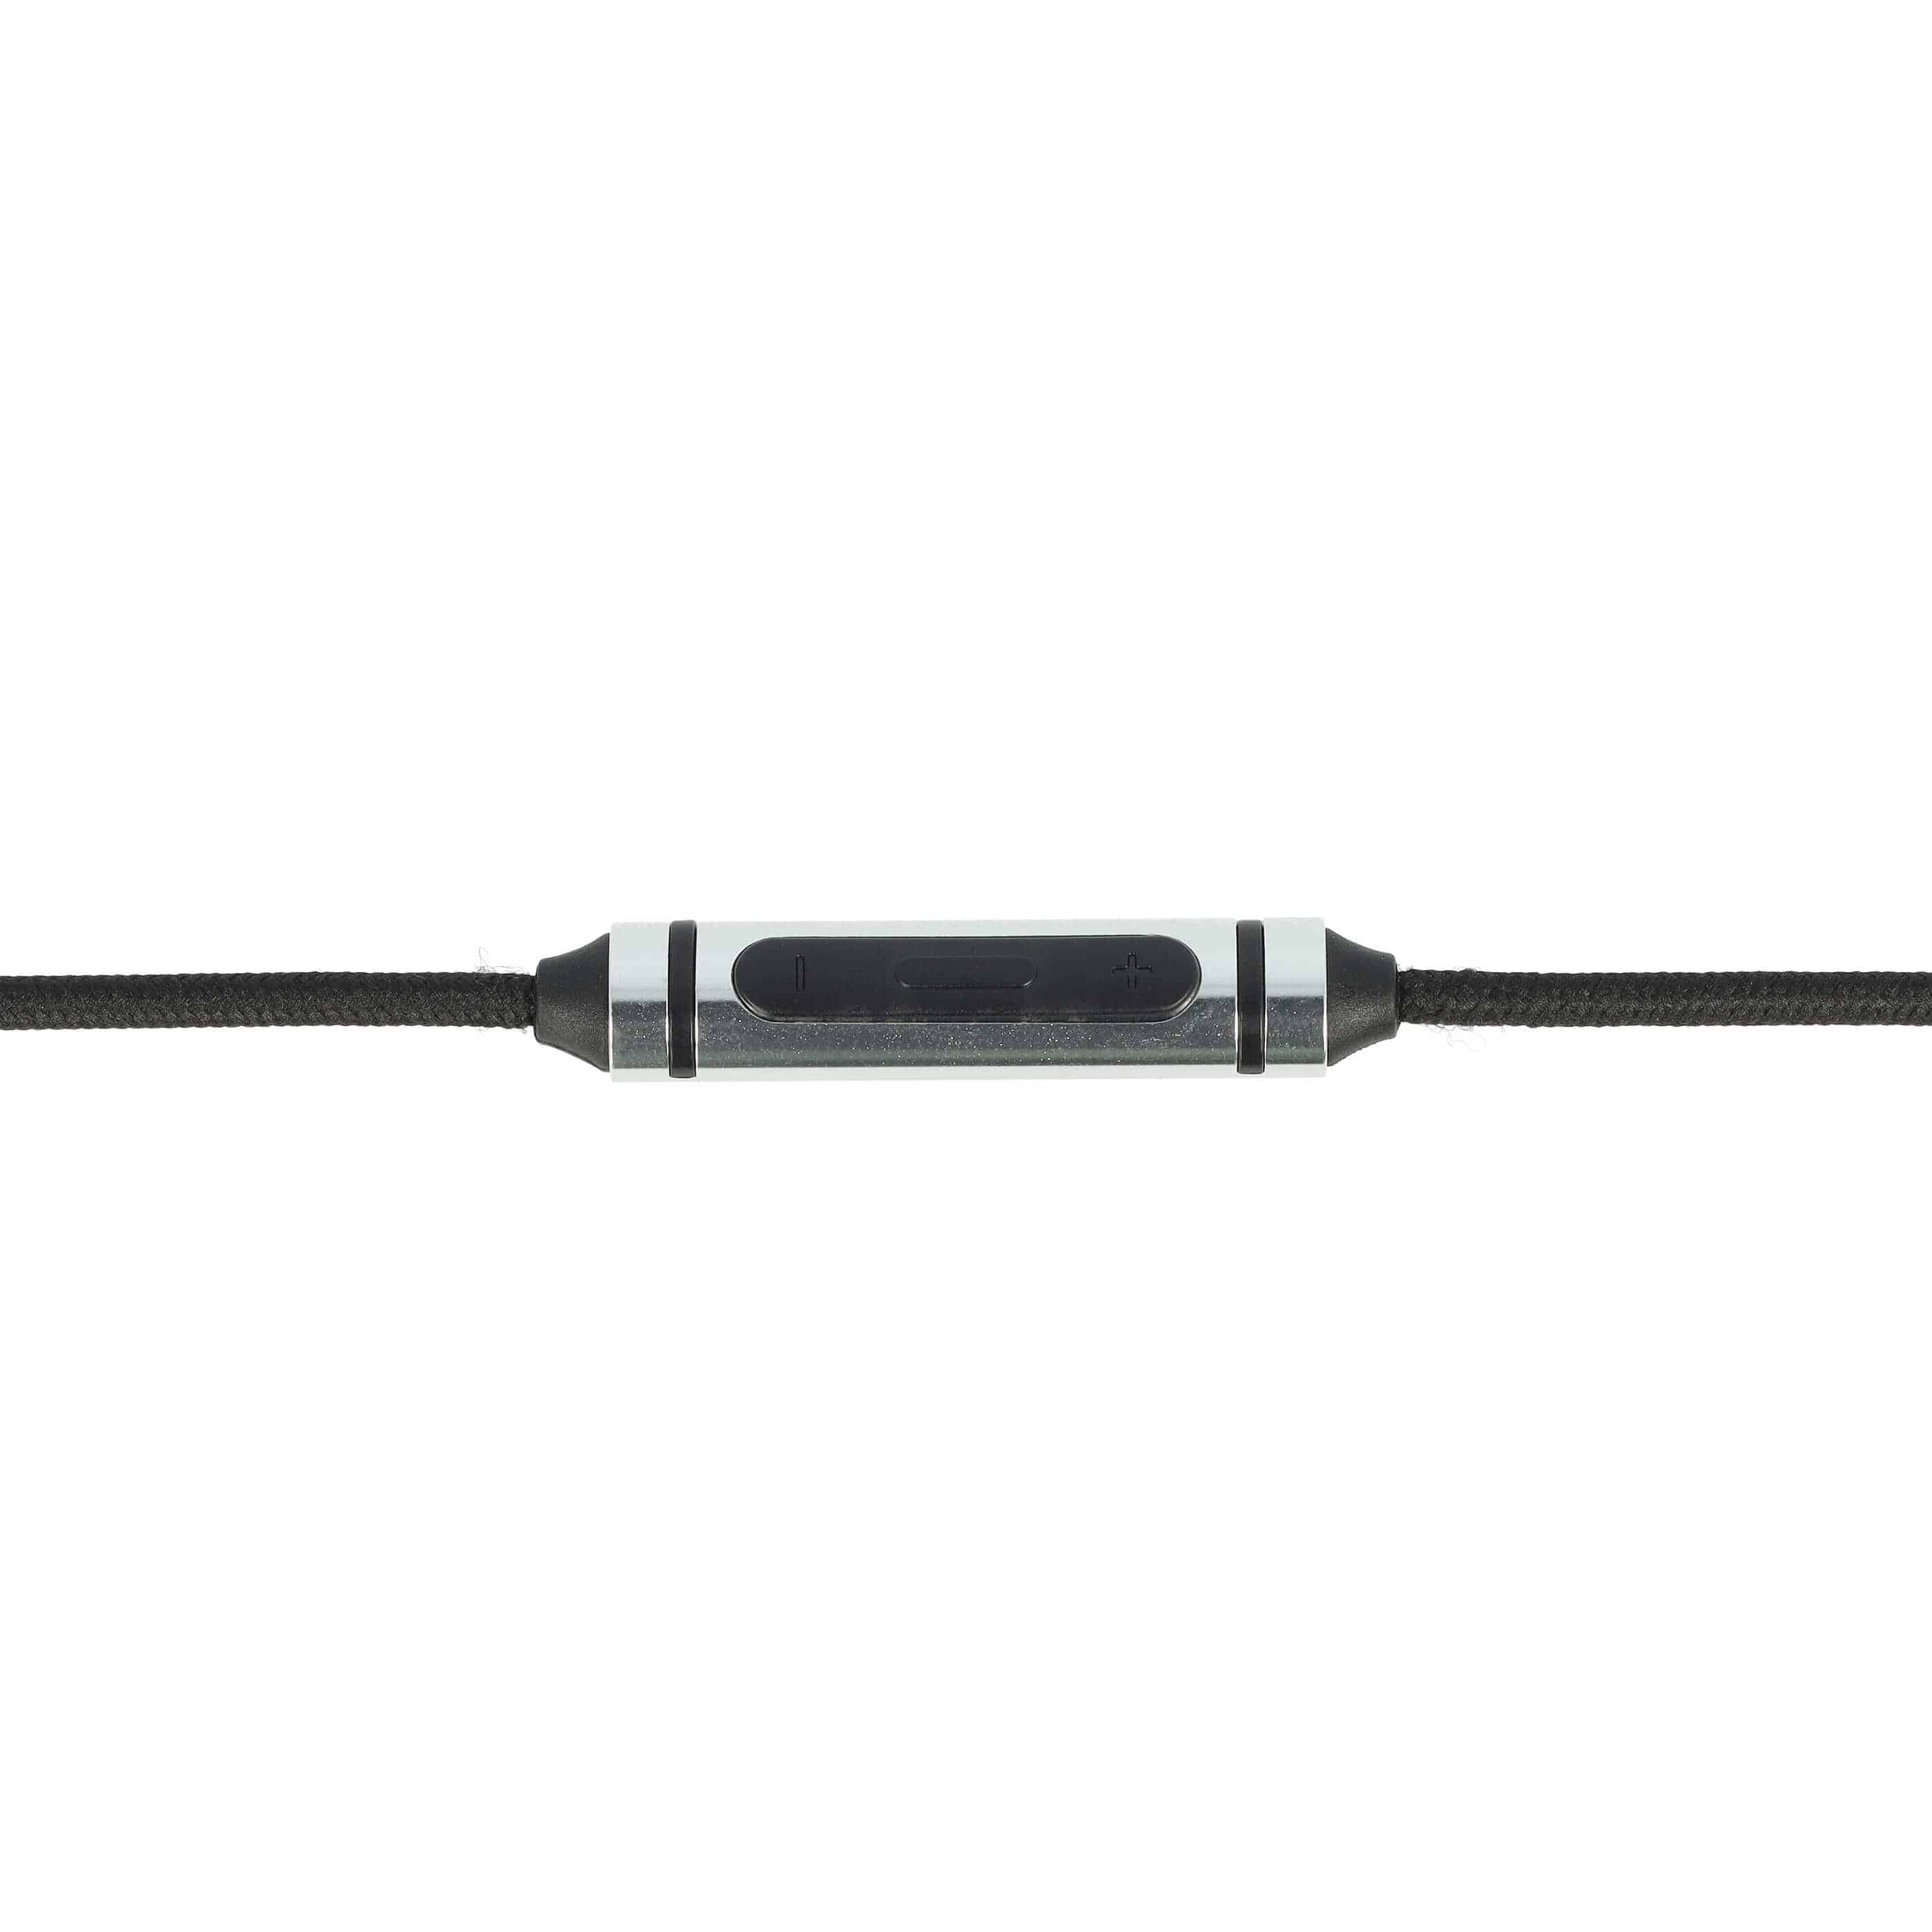 Kopfhörer Kabel passend für AKG, Sennheiser, Bose Y40 u.a., 150 cm, schwarz, silber